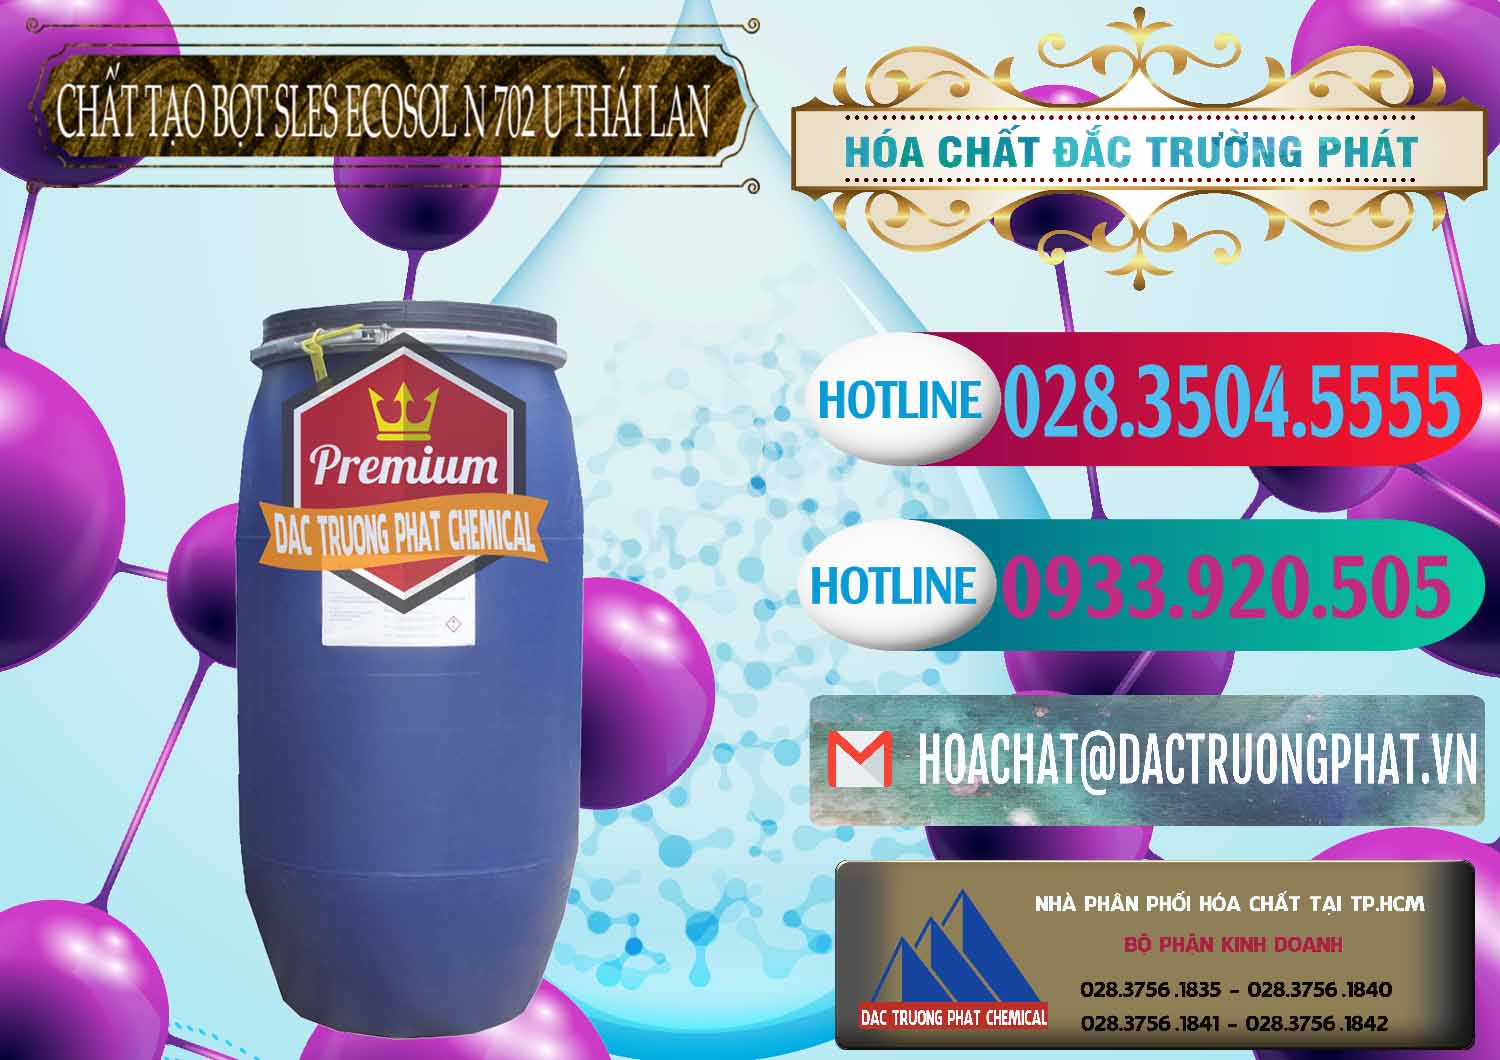 Chuyên phân phối và bán Chất Tạo Bọt Sles - Sodium Lauryl Ether Sulphate Ecosol N 702 U Thái Lan - 0254 - Nơi chuyên kinh doanh ( phân phối ) hóa chất tại TP.HCM - truongphat.vn